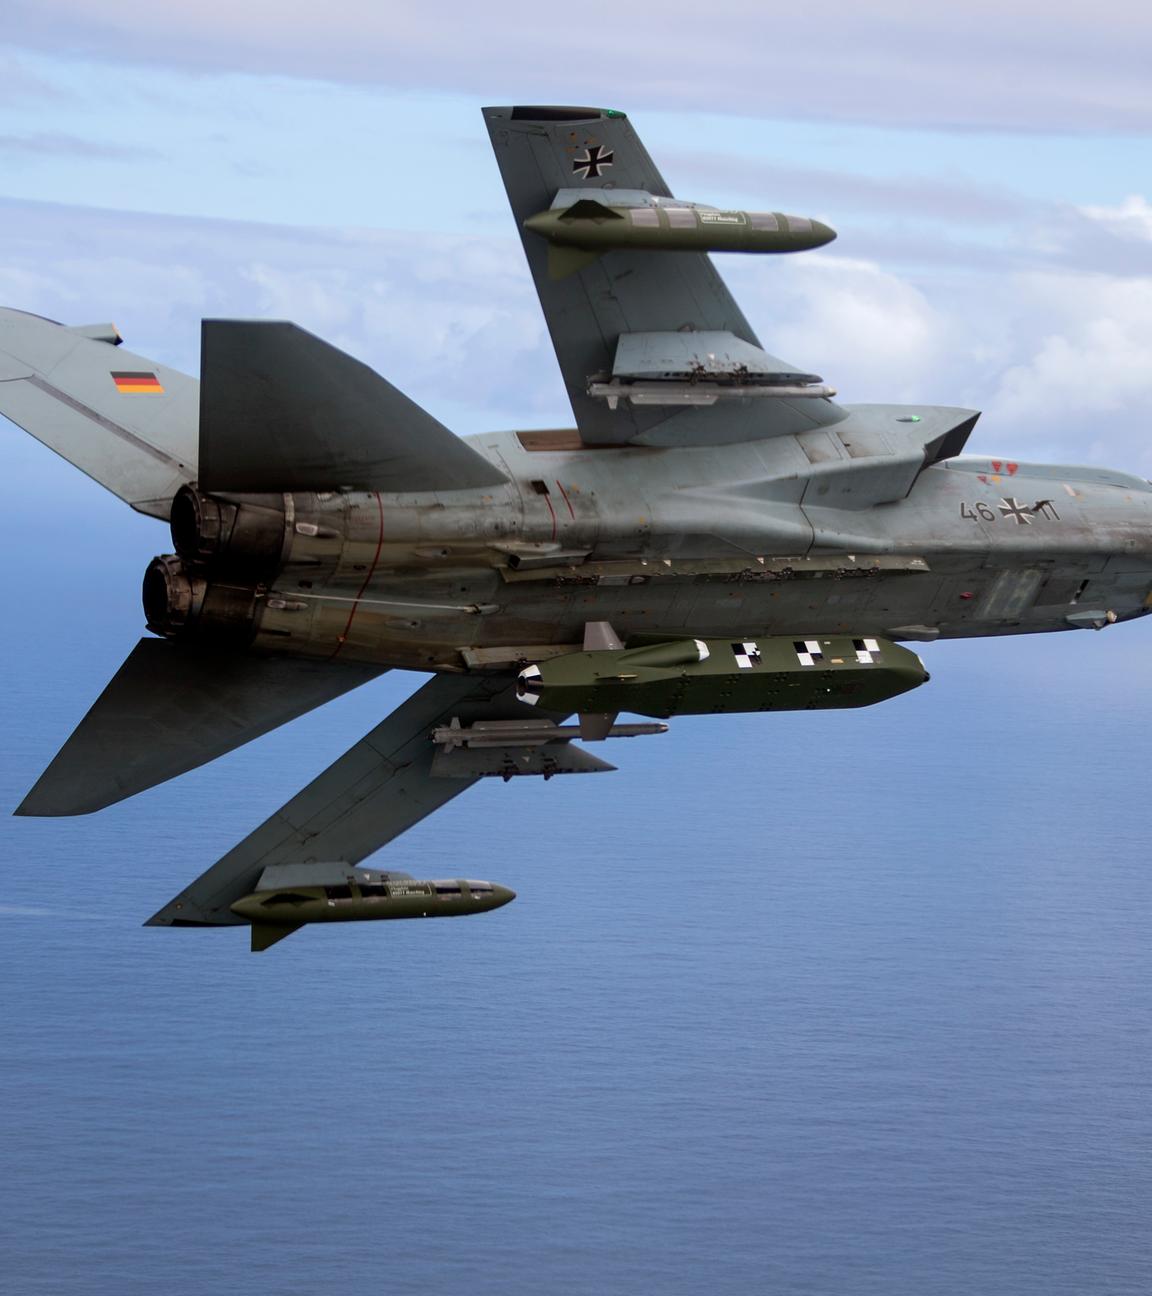  Die von der Bundeswehr herausgegebene Aufnahme zeigt einen Kampfjet Tornado IDS ASSTA 3.0, bestückt mit dem Lenkflugkörper Taurus, der im Rahmen der Übung «Two Oceans» über See fliegt.